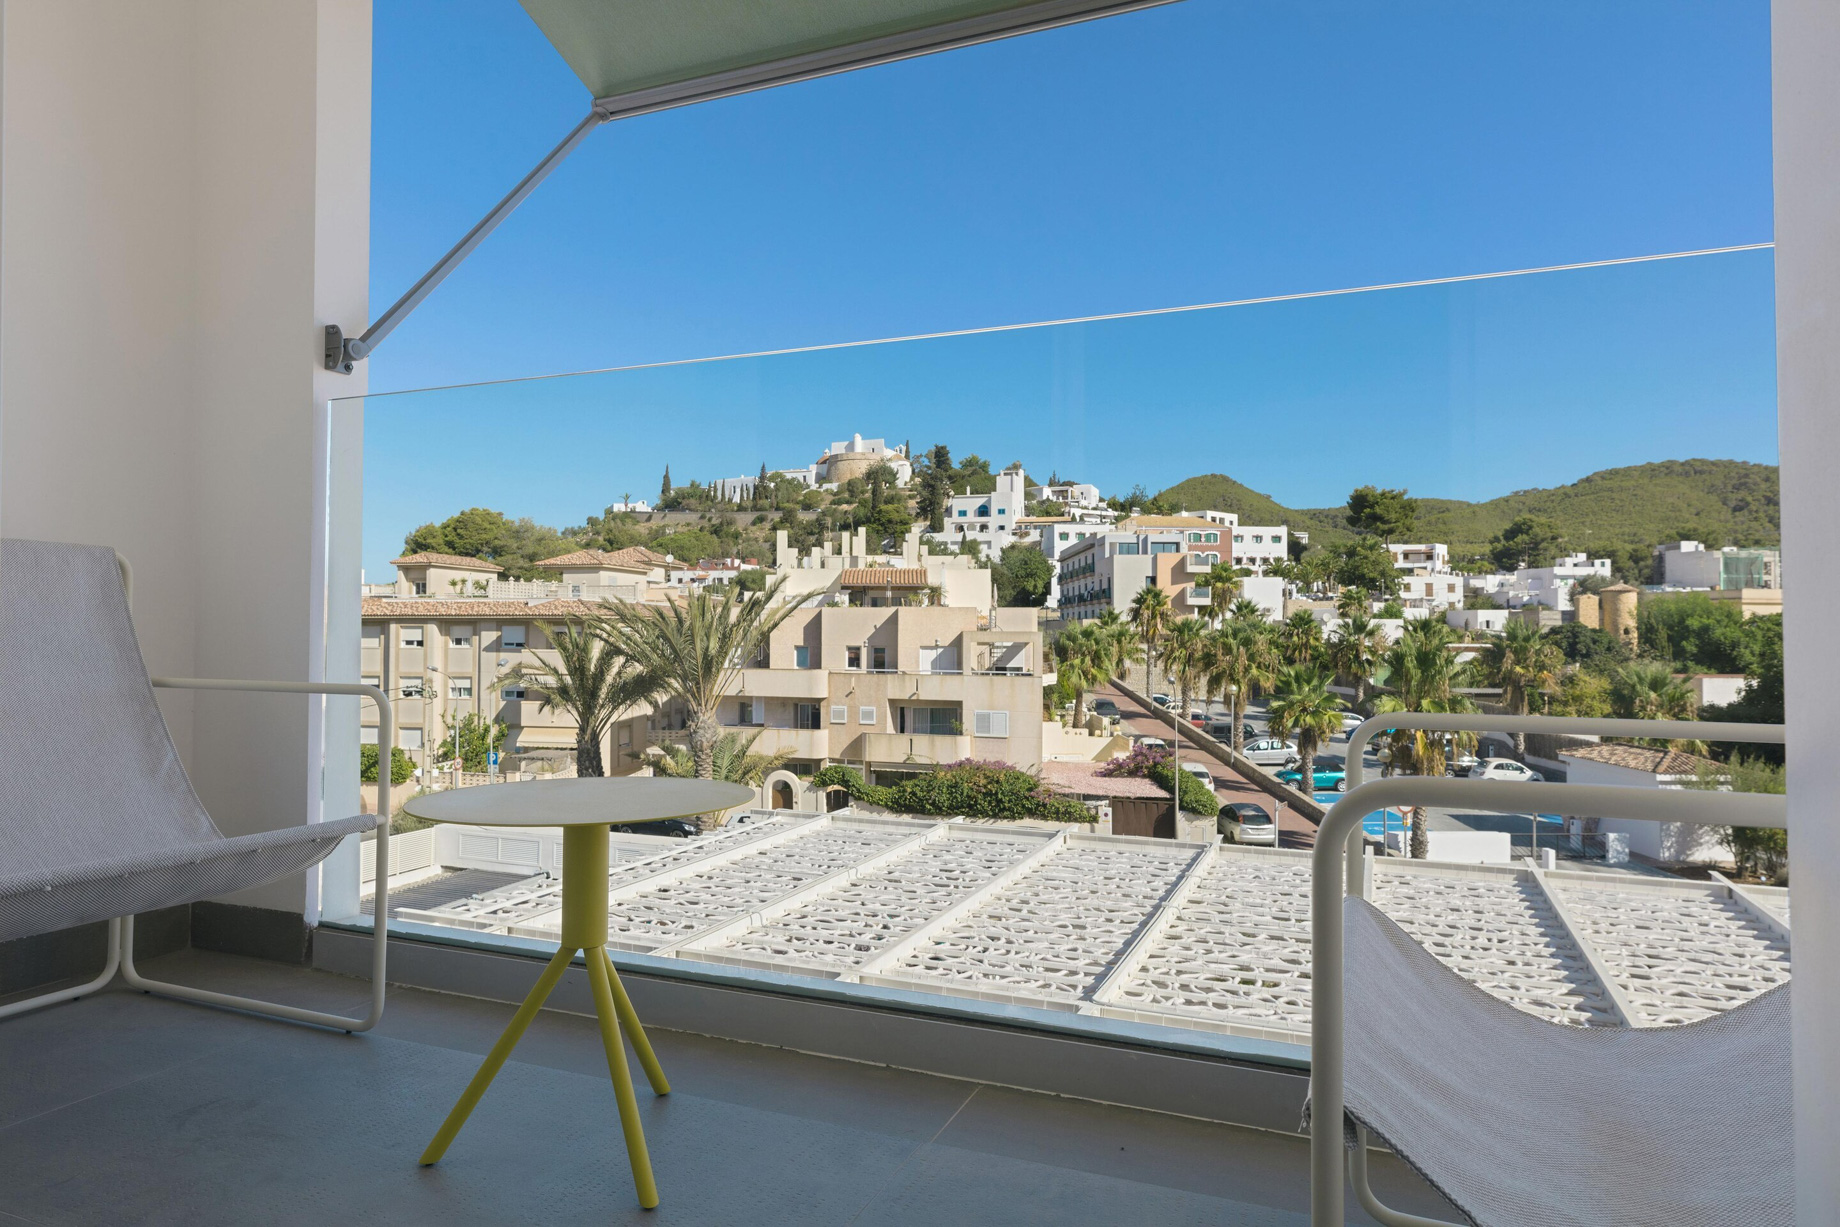 W Ibiza Hotel – Santa Eulalia del Rio, Spain – Private Terrace View